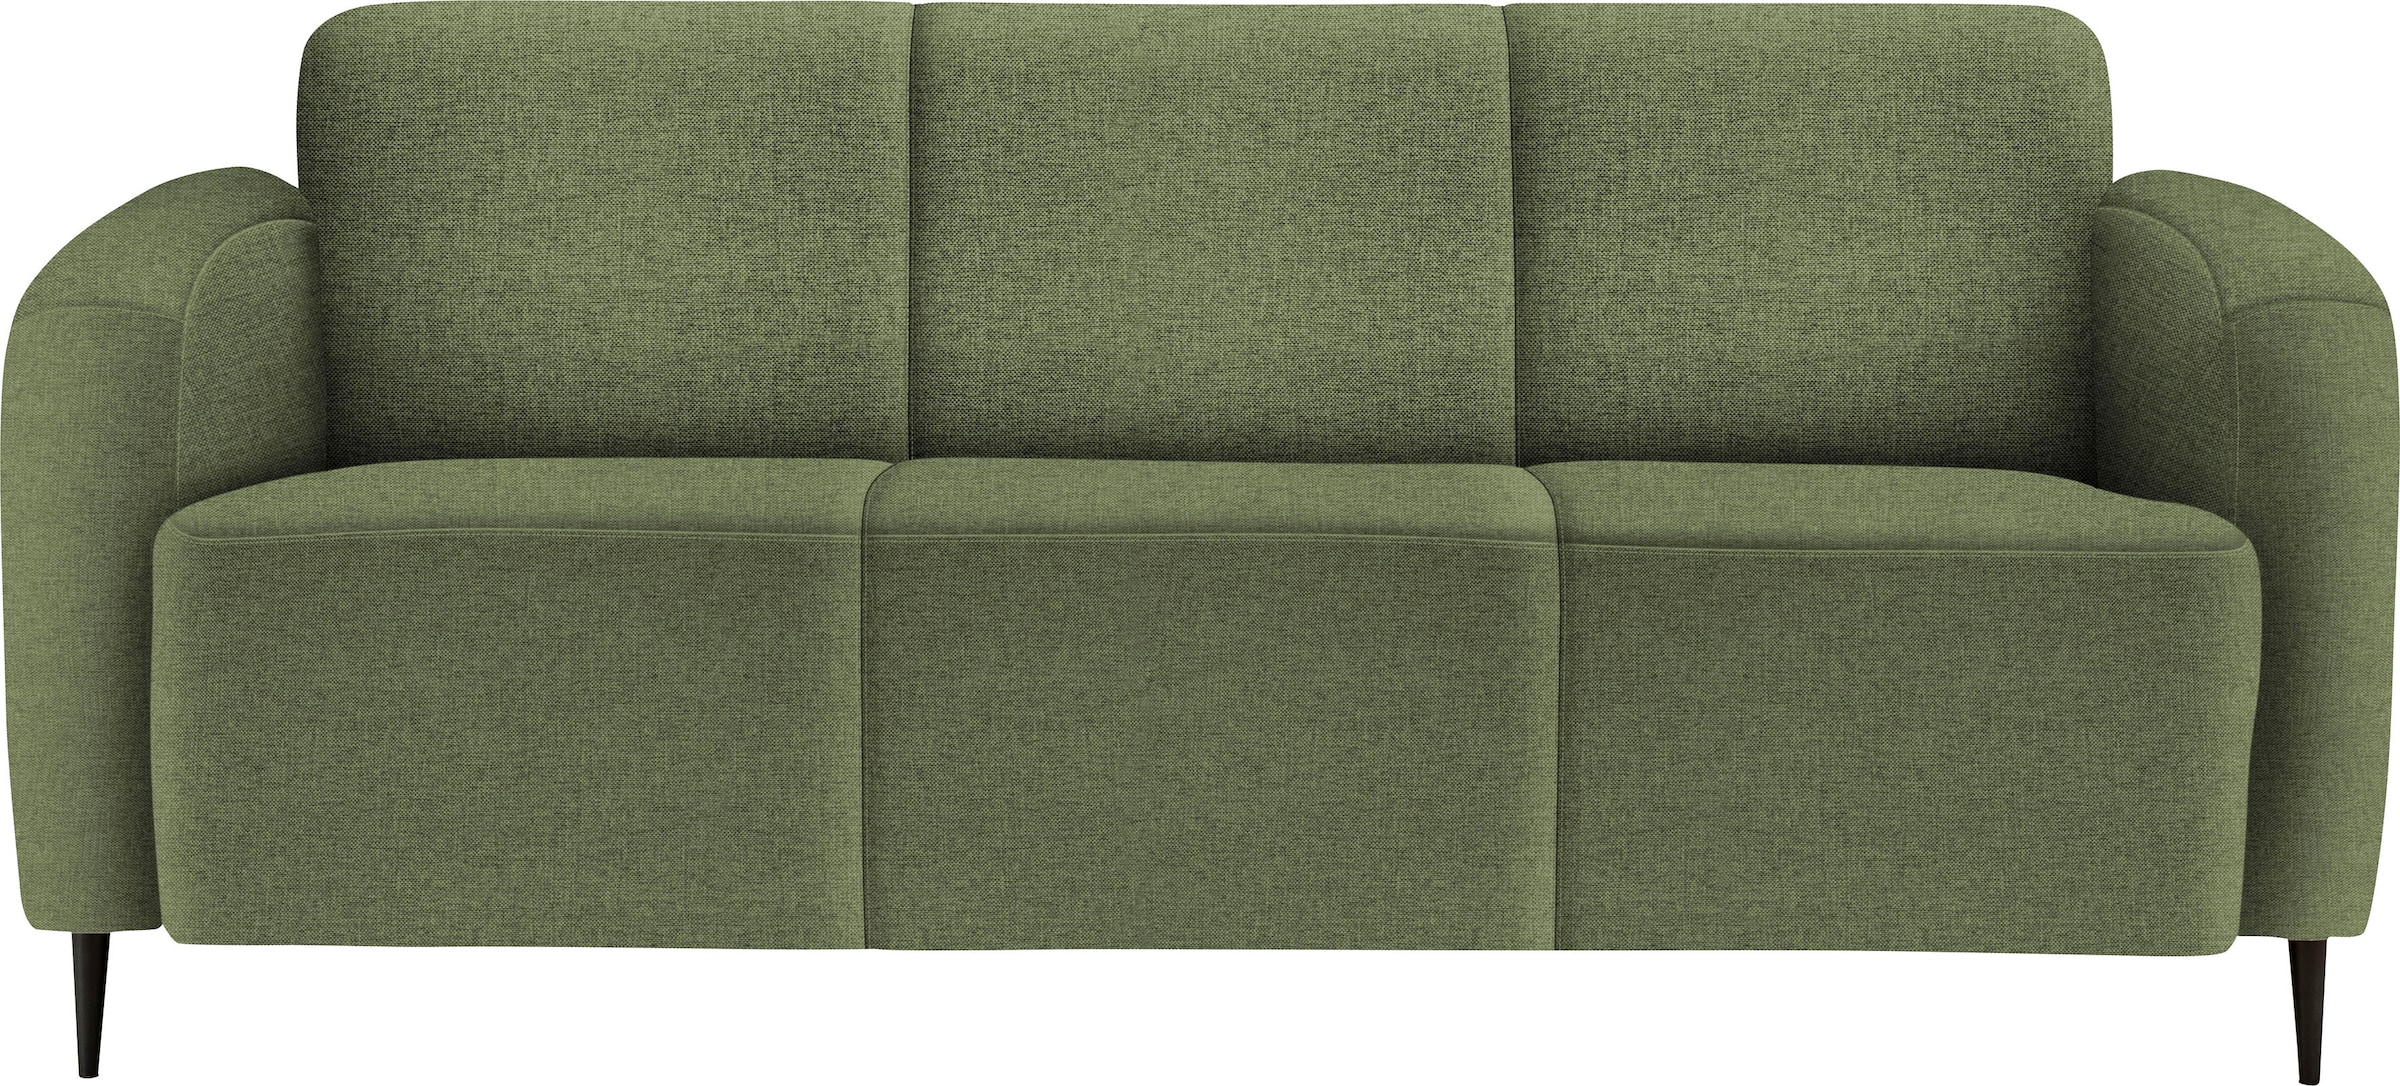 3-Sitzer-Sofa online kaufen bei Quelle | Alle Sofas